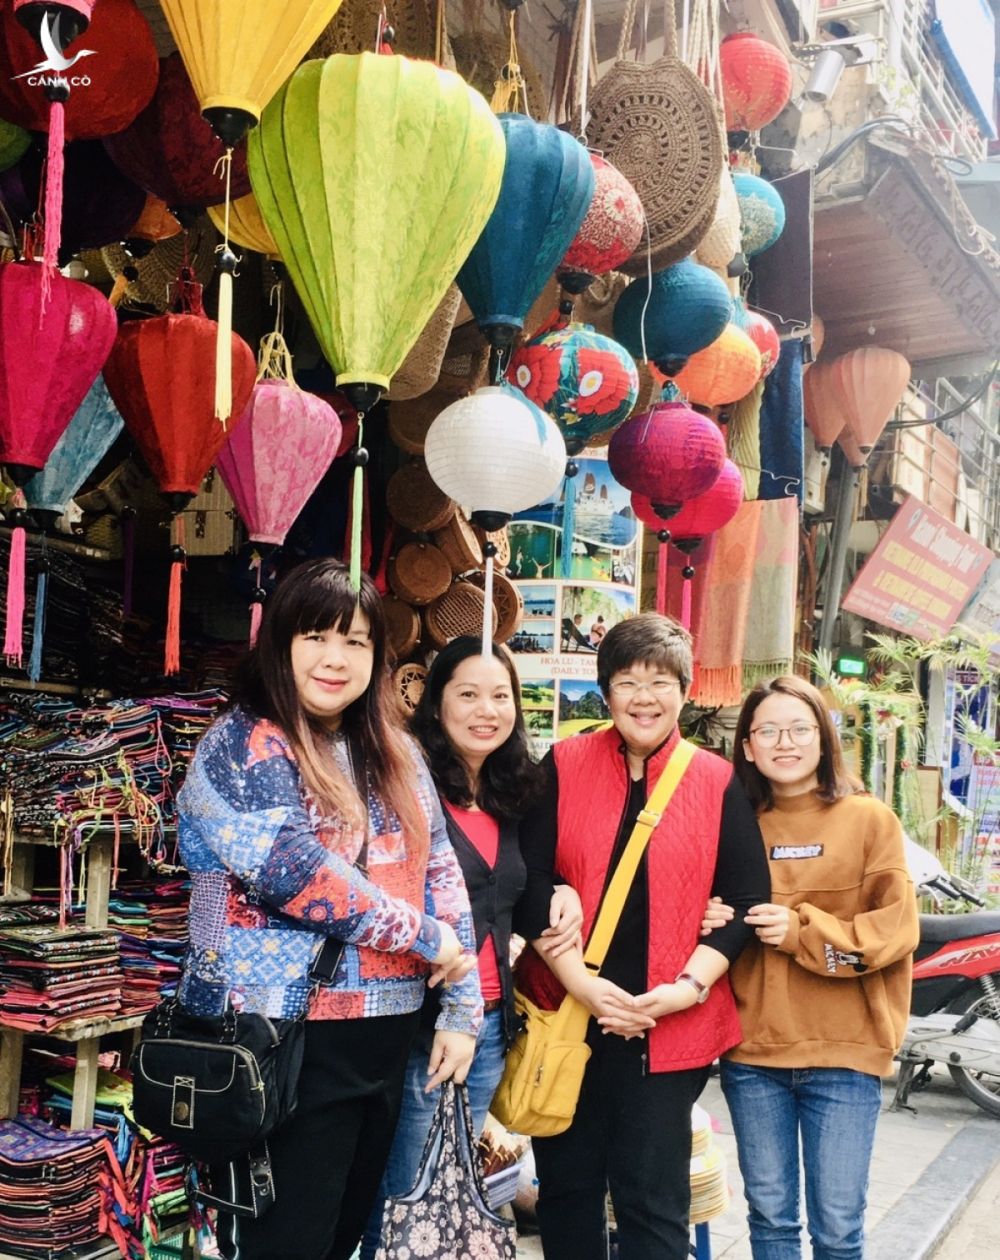 Khu phố cổ những ngày sầm uất. Chị Ngọc Linh (từ hai từ trái sang) chụp ảnh cùng khách hàng.